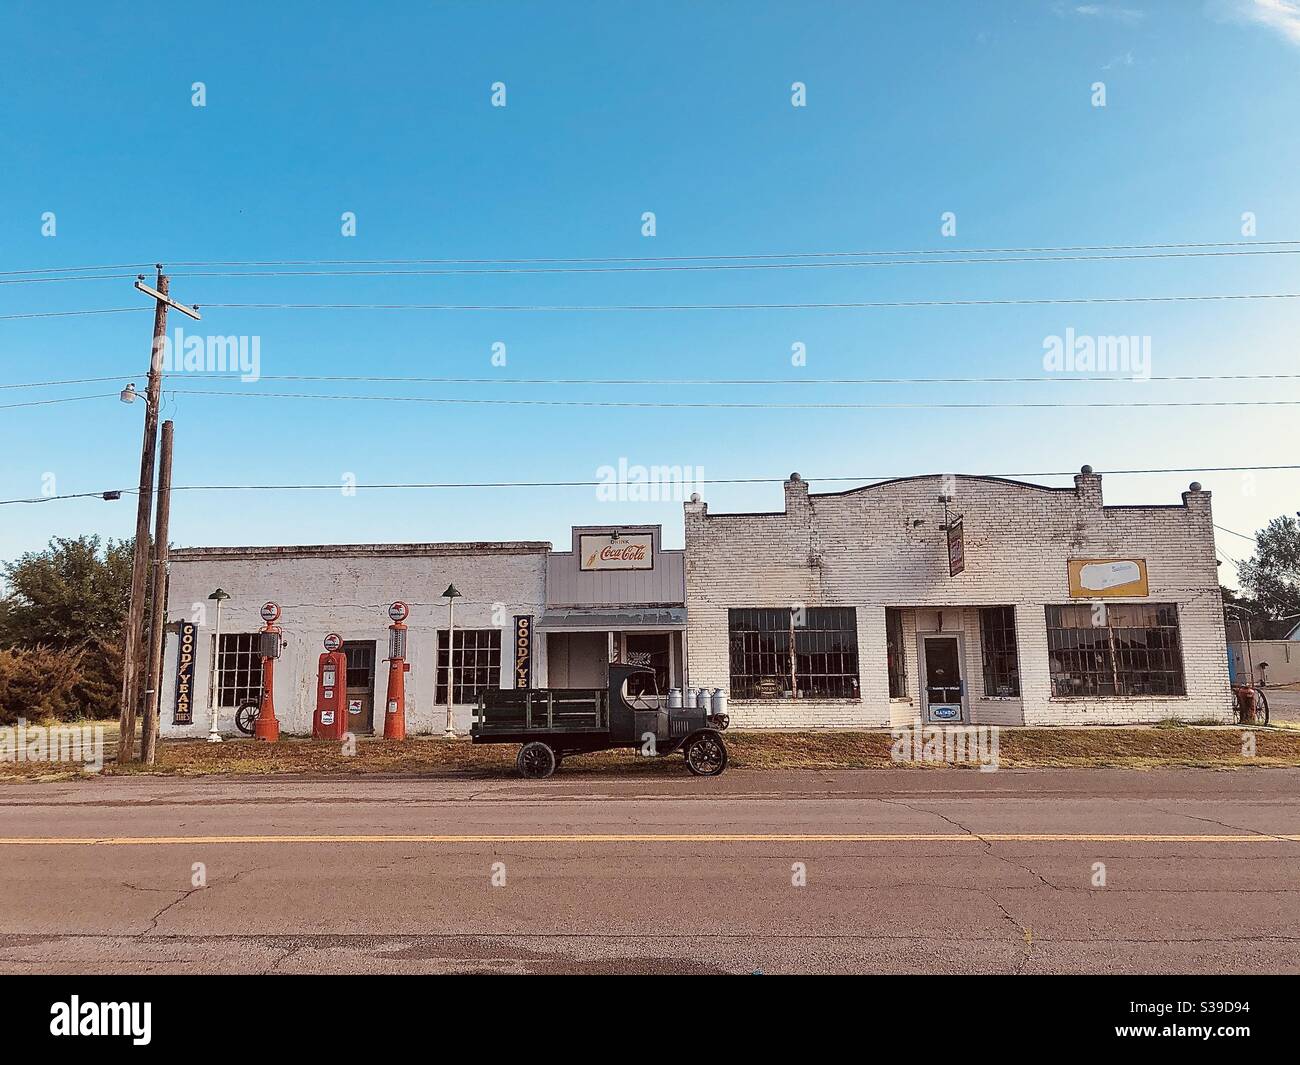 Oklahoma small town Stock Photo